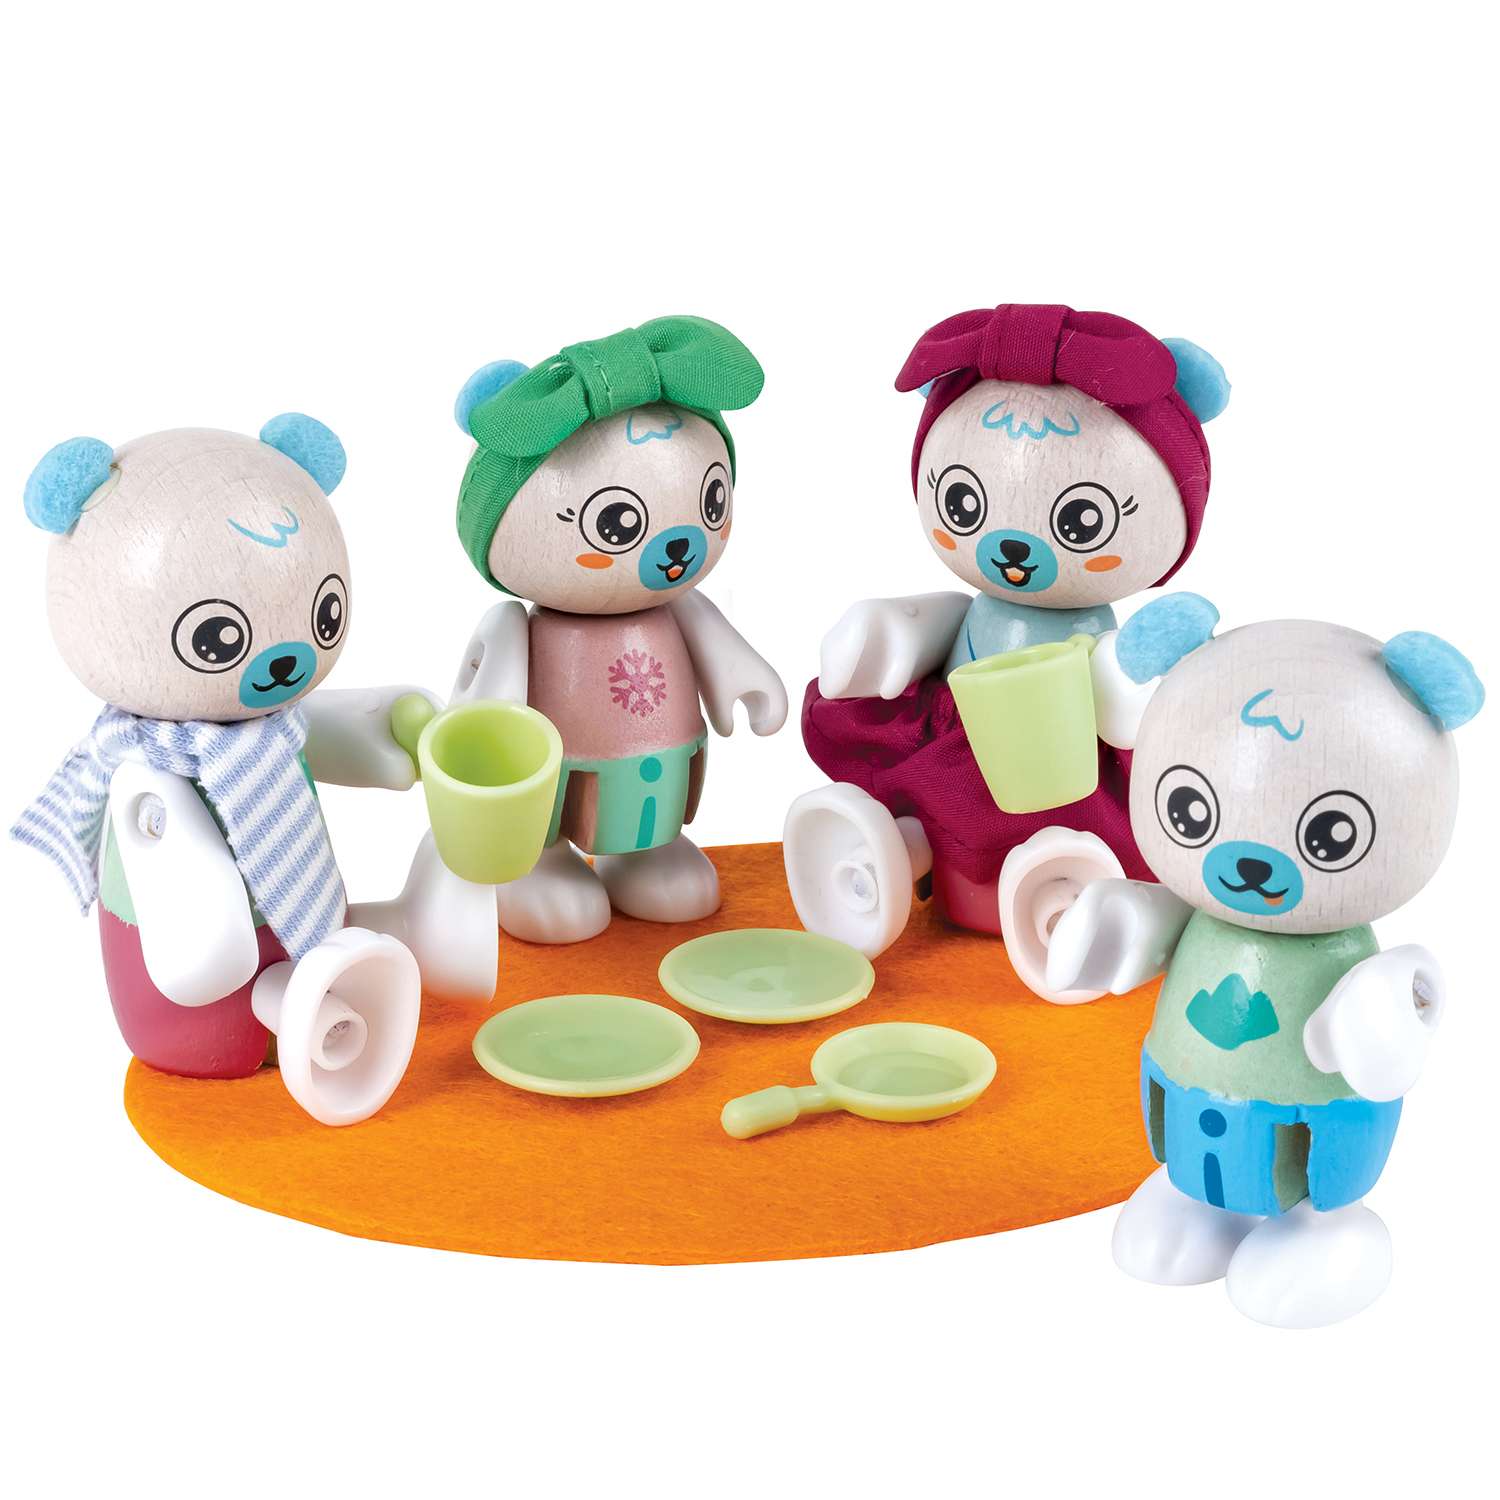 Игрушки фигурки Hape животных Семья белых медведей 4 предмета в наборе - фото 2